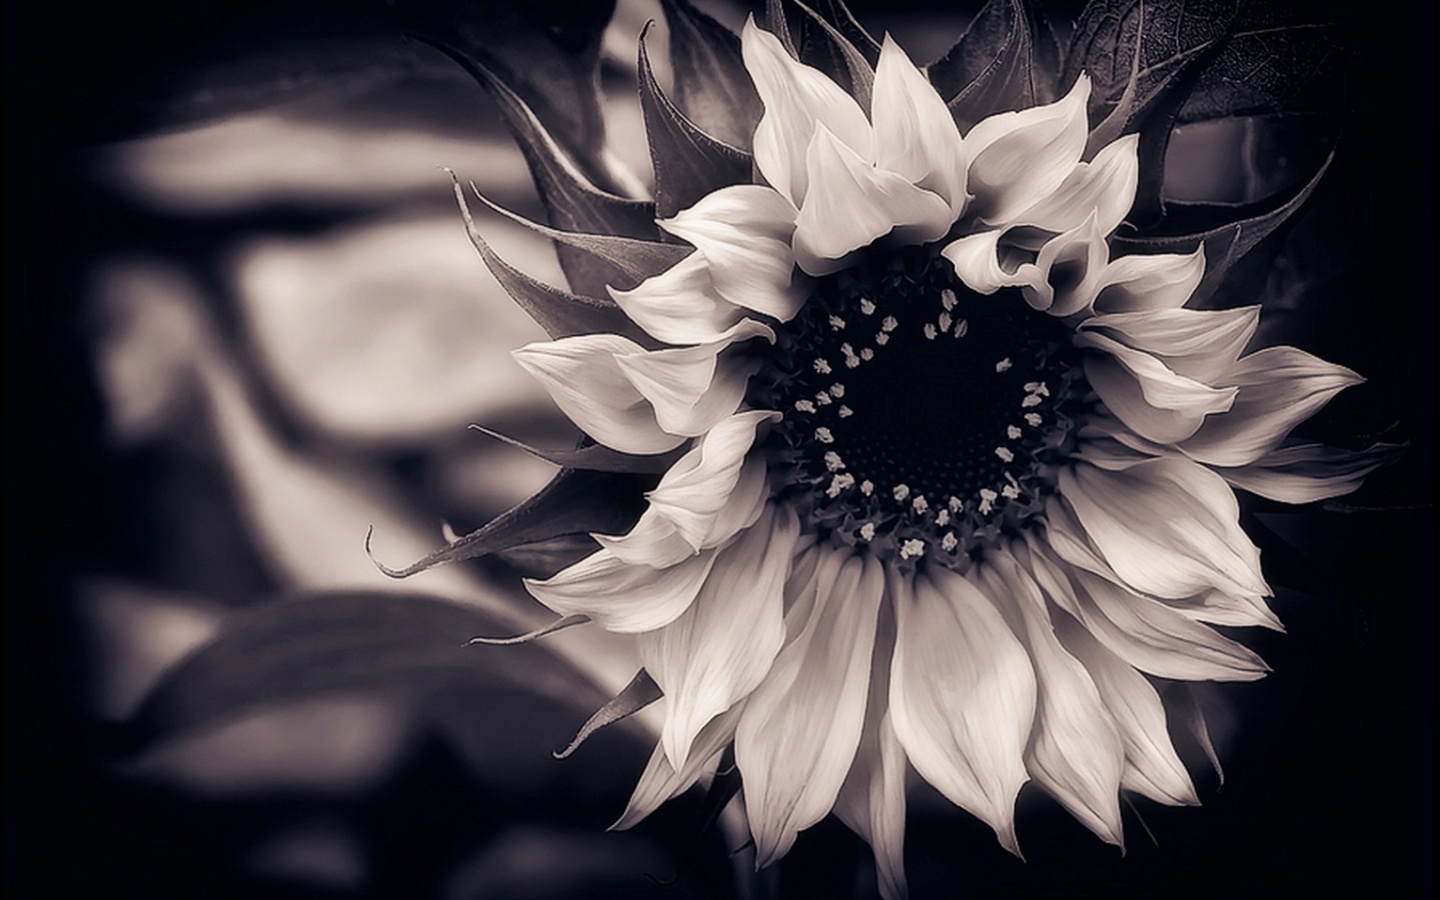 黒と白の花の壁紙,モノクロ写真,白い,黒と白,花,黒